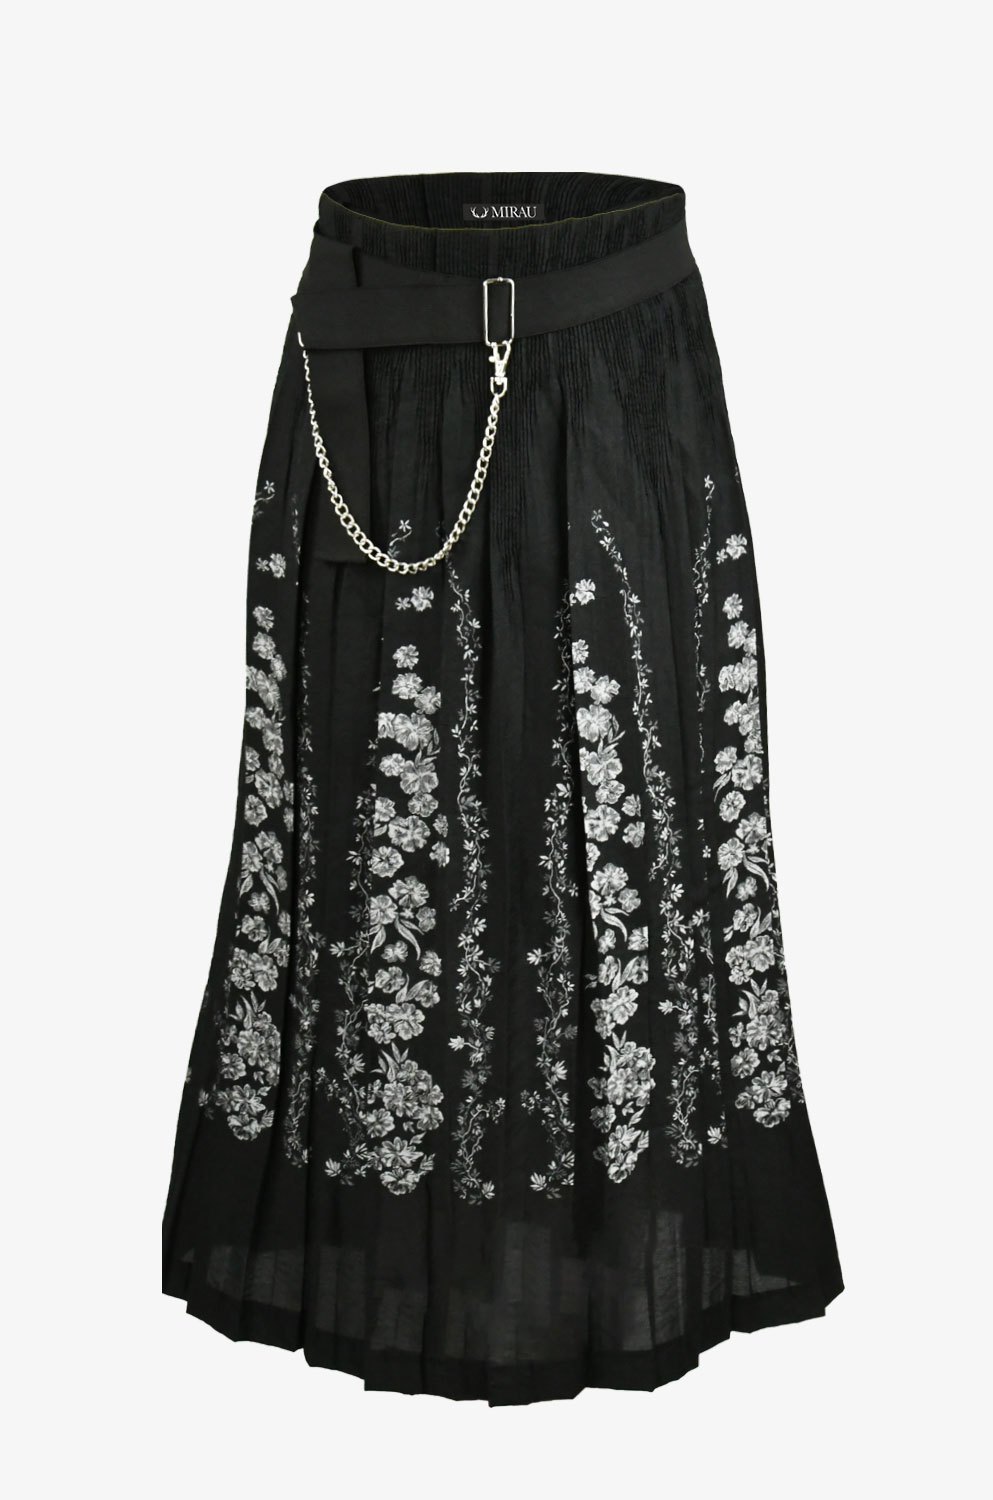 Dámska plysová sukňa - čierna (výpredaj)